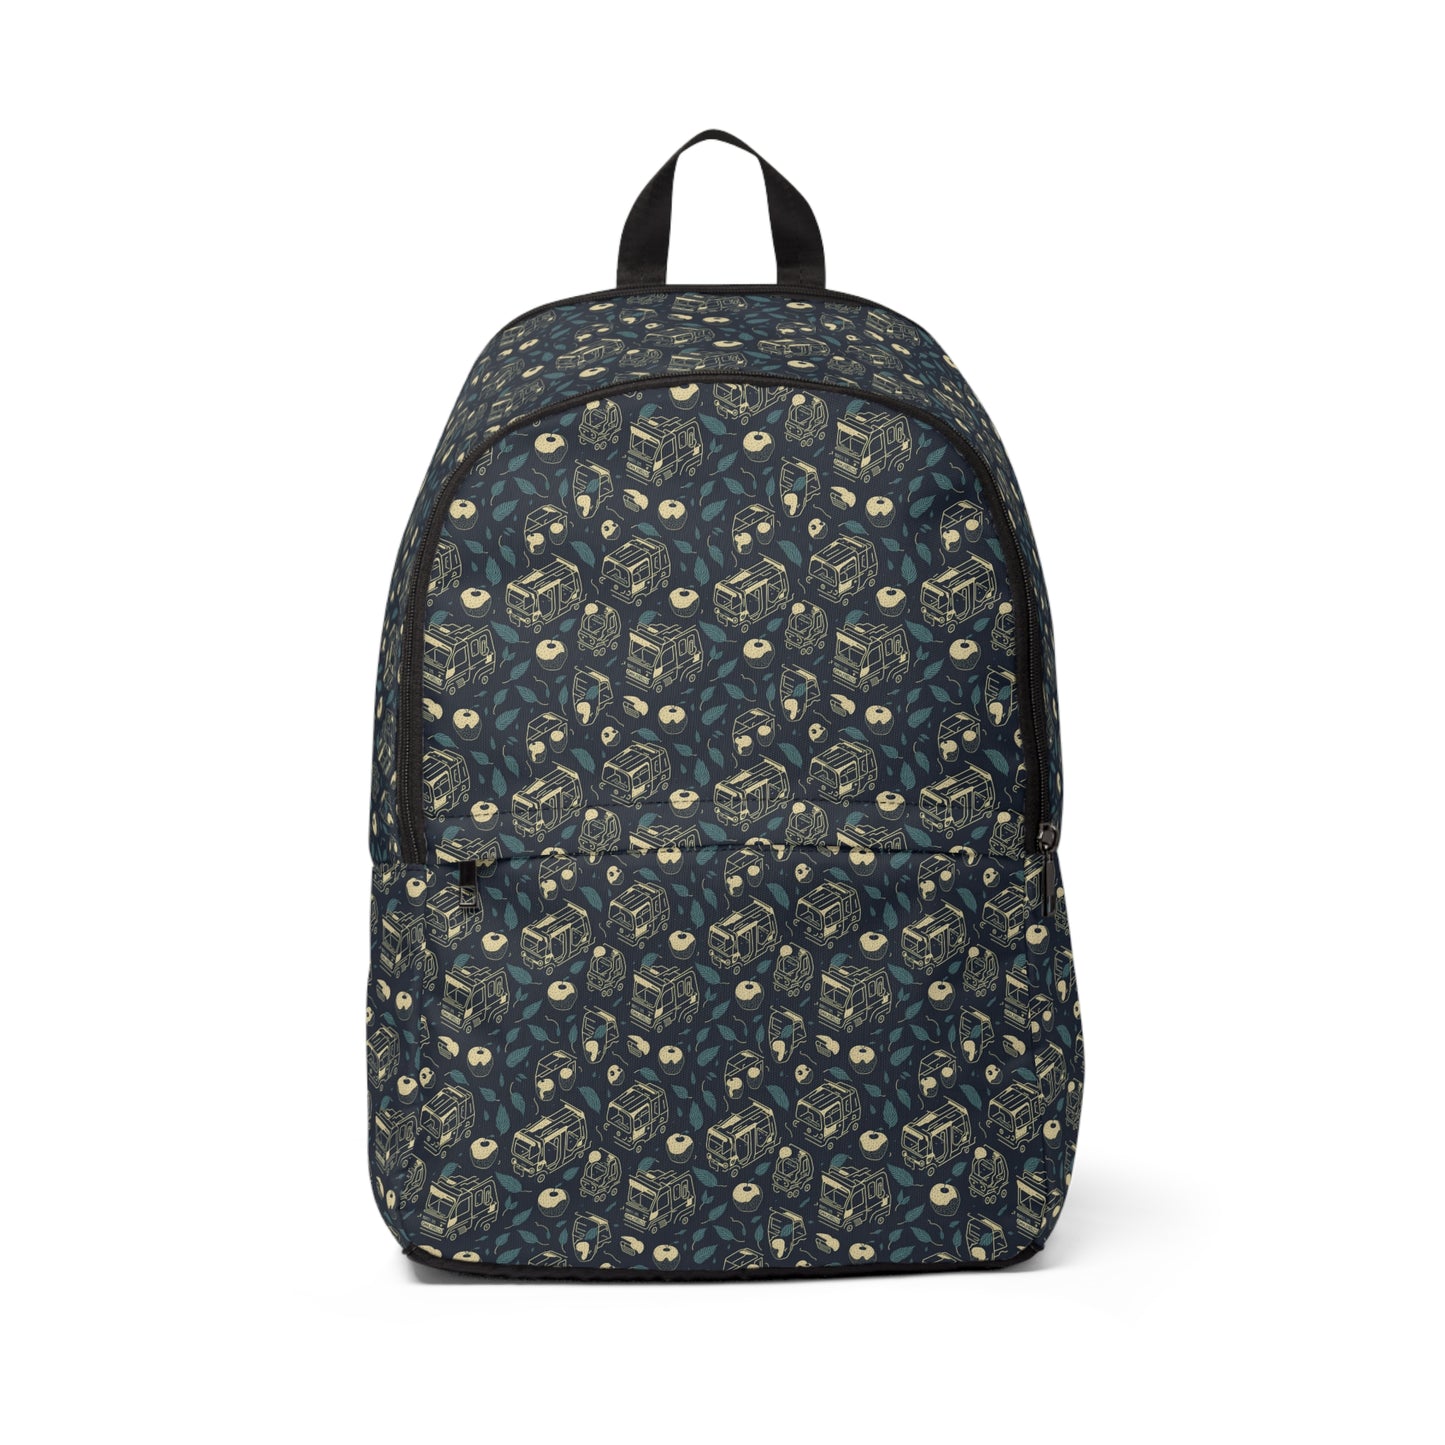 Apple n Car - Fabric Backpack